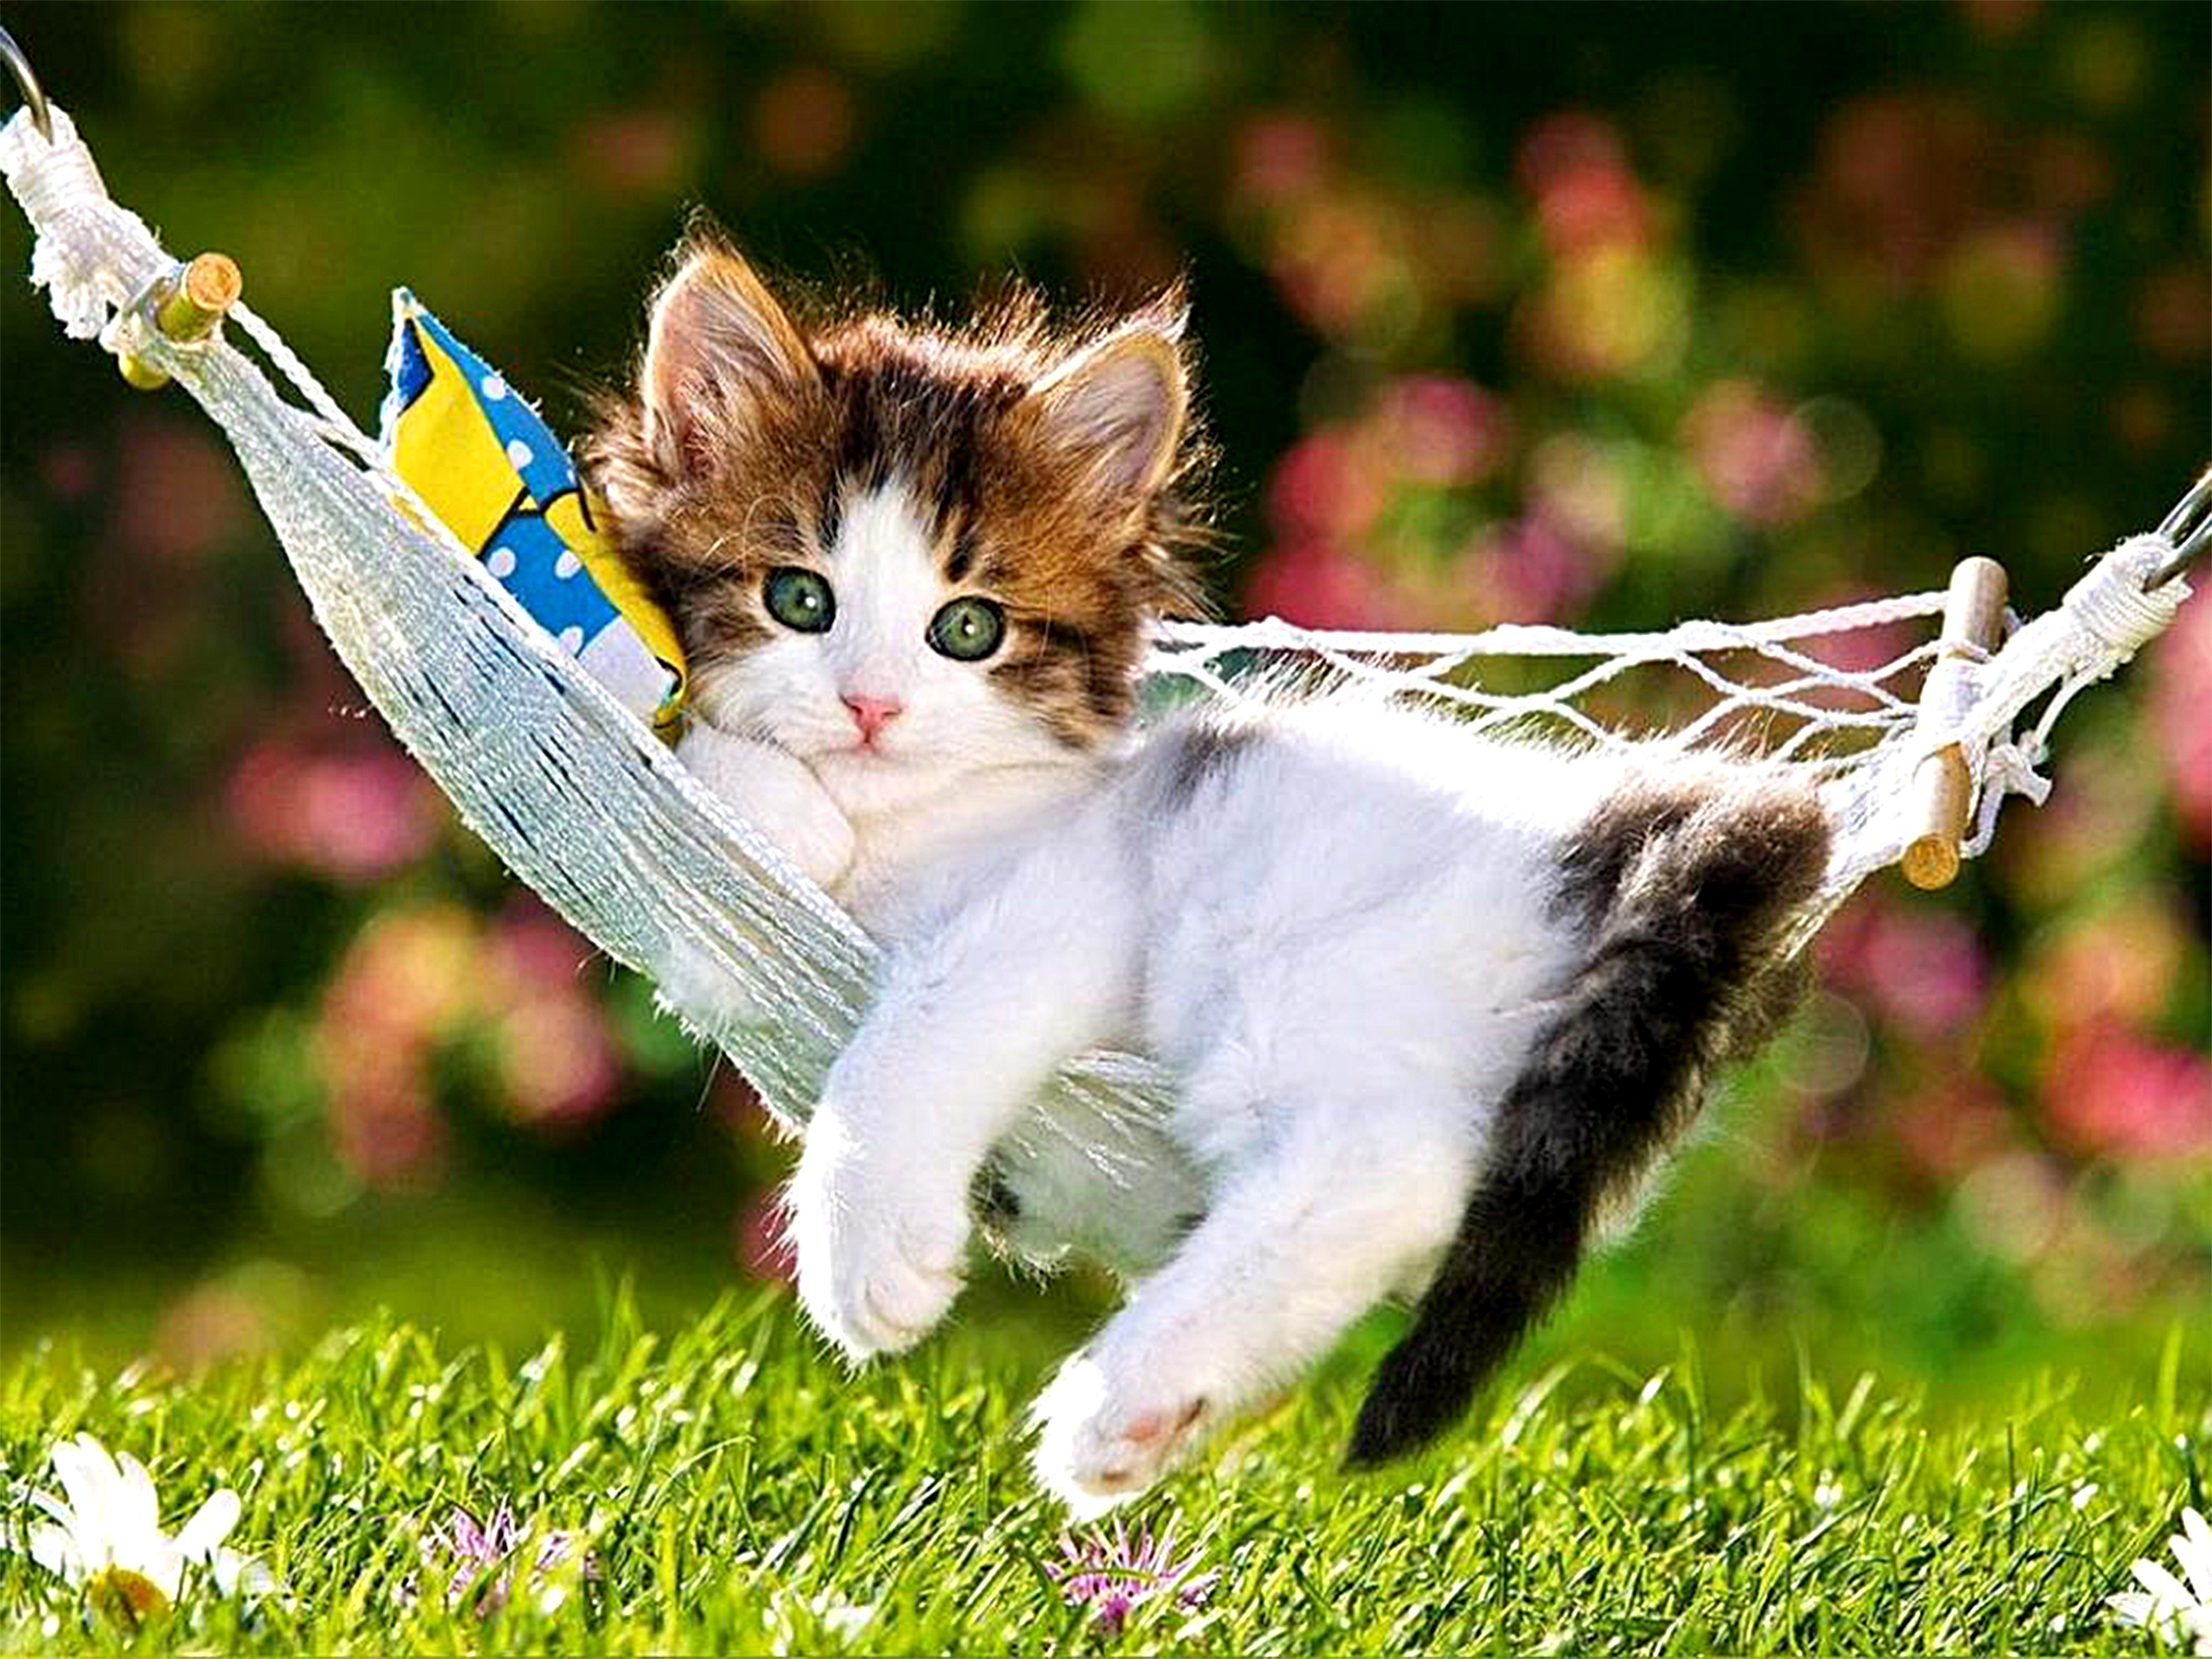 Adorable Kitten In Hammock HD Wallpaper Background Image